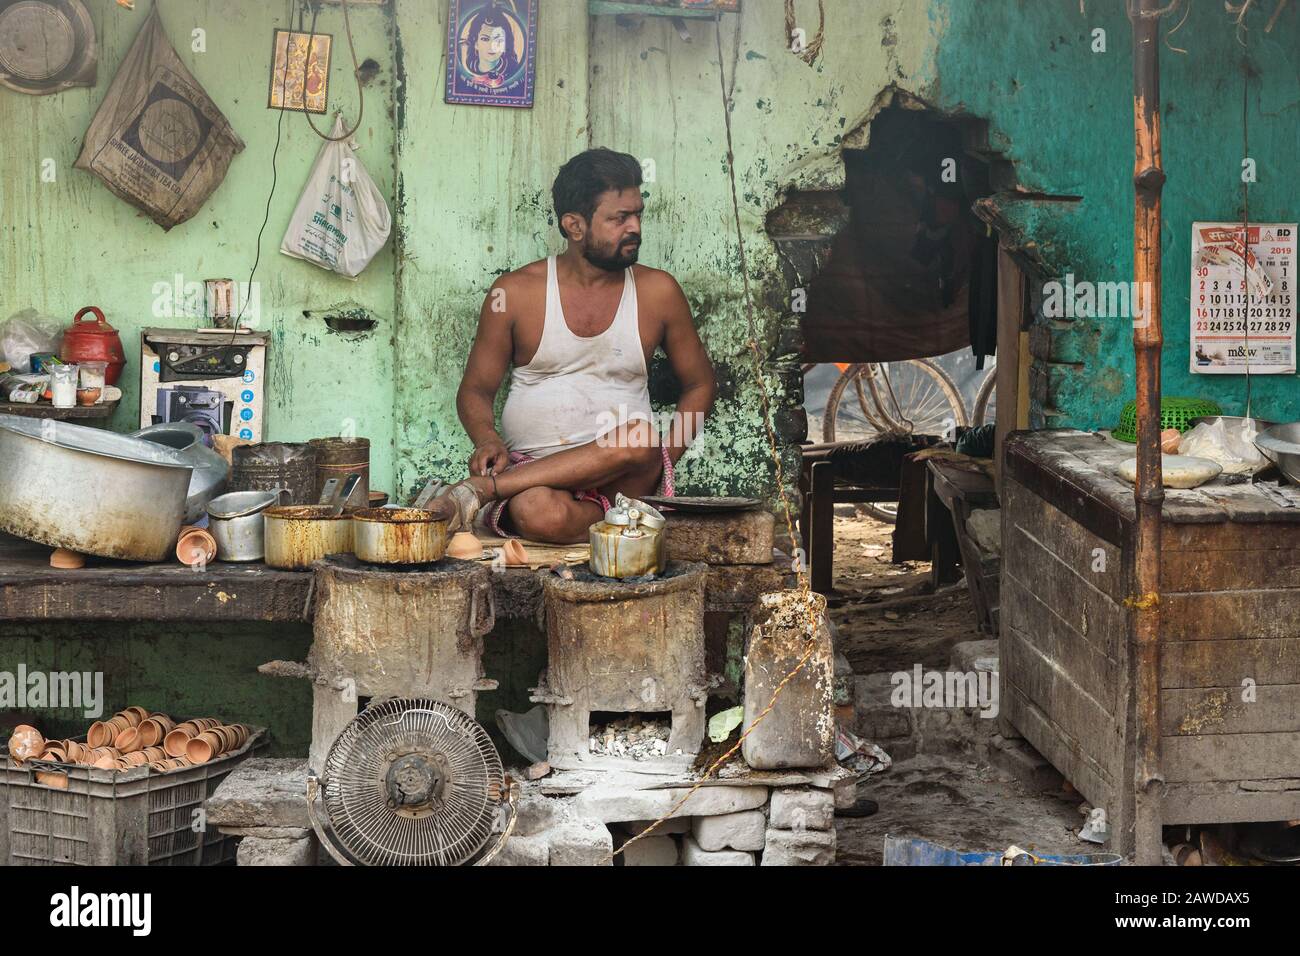 Der indische Mann verkauft Tee Masala Chai auf der Straße in Kalkata.  Indien Stockfotografie - Alamy